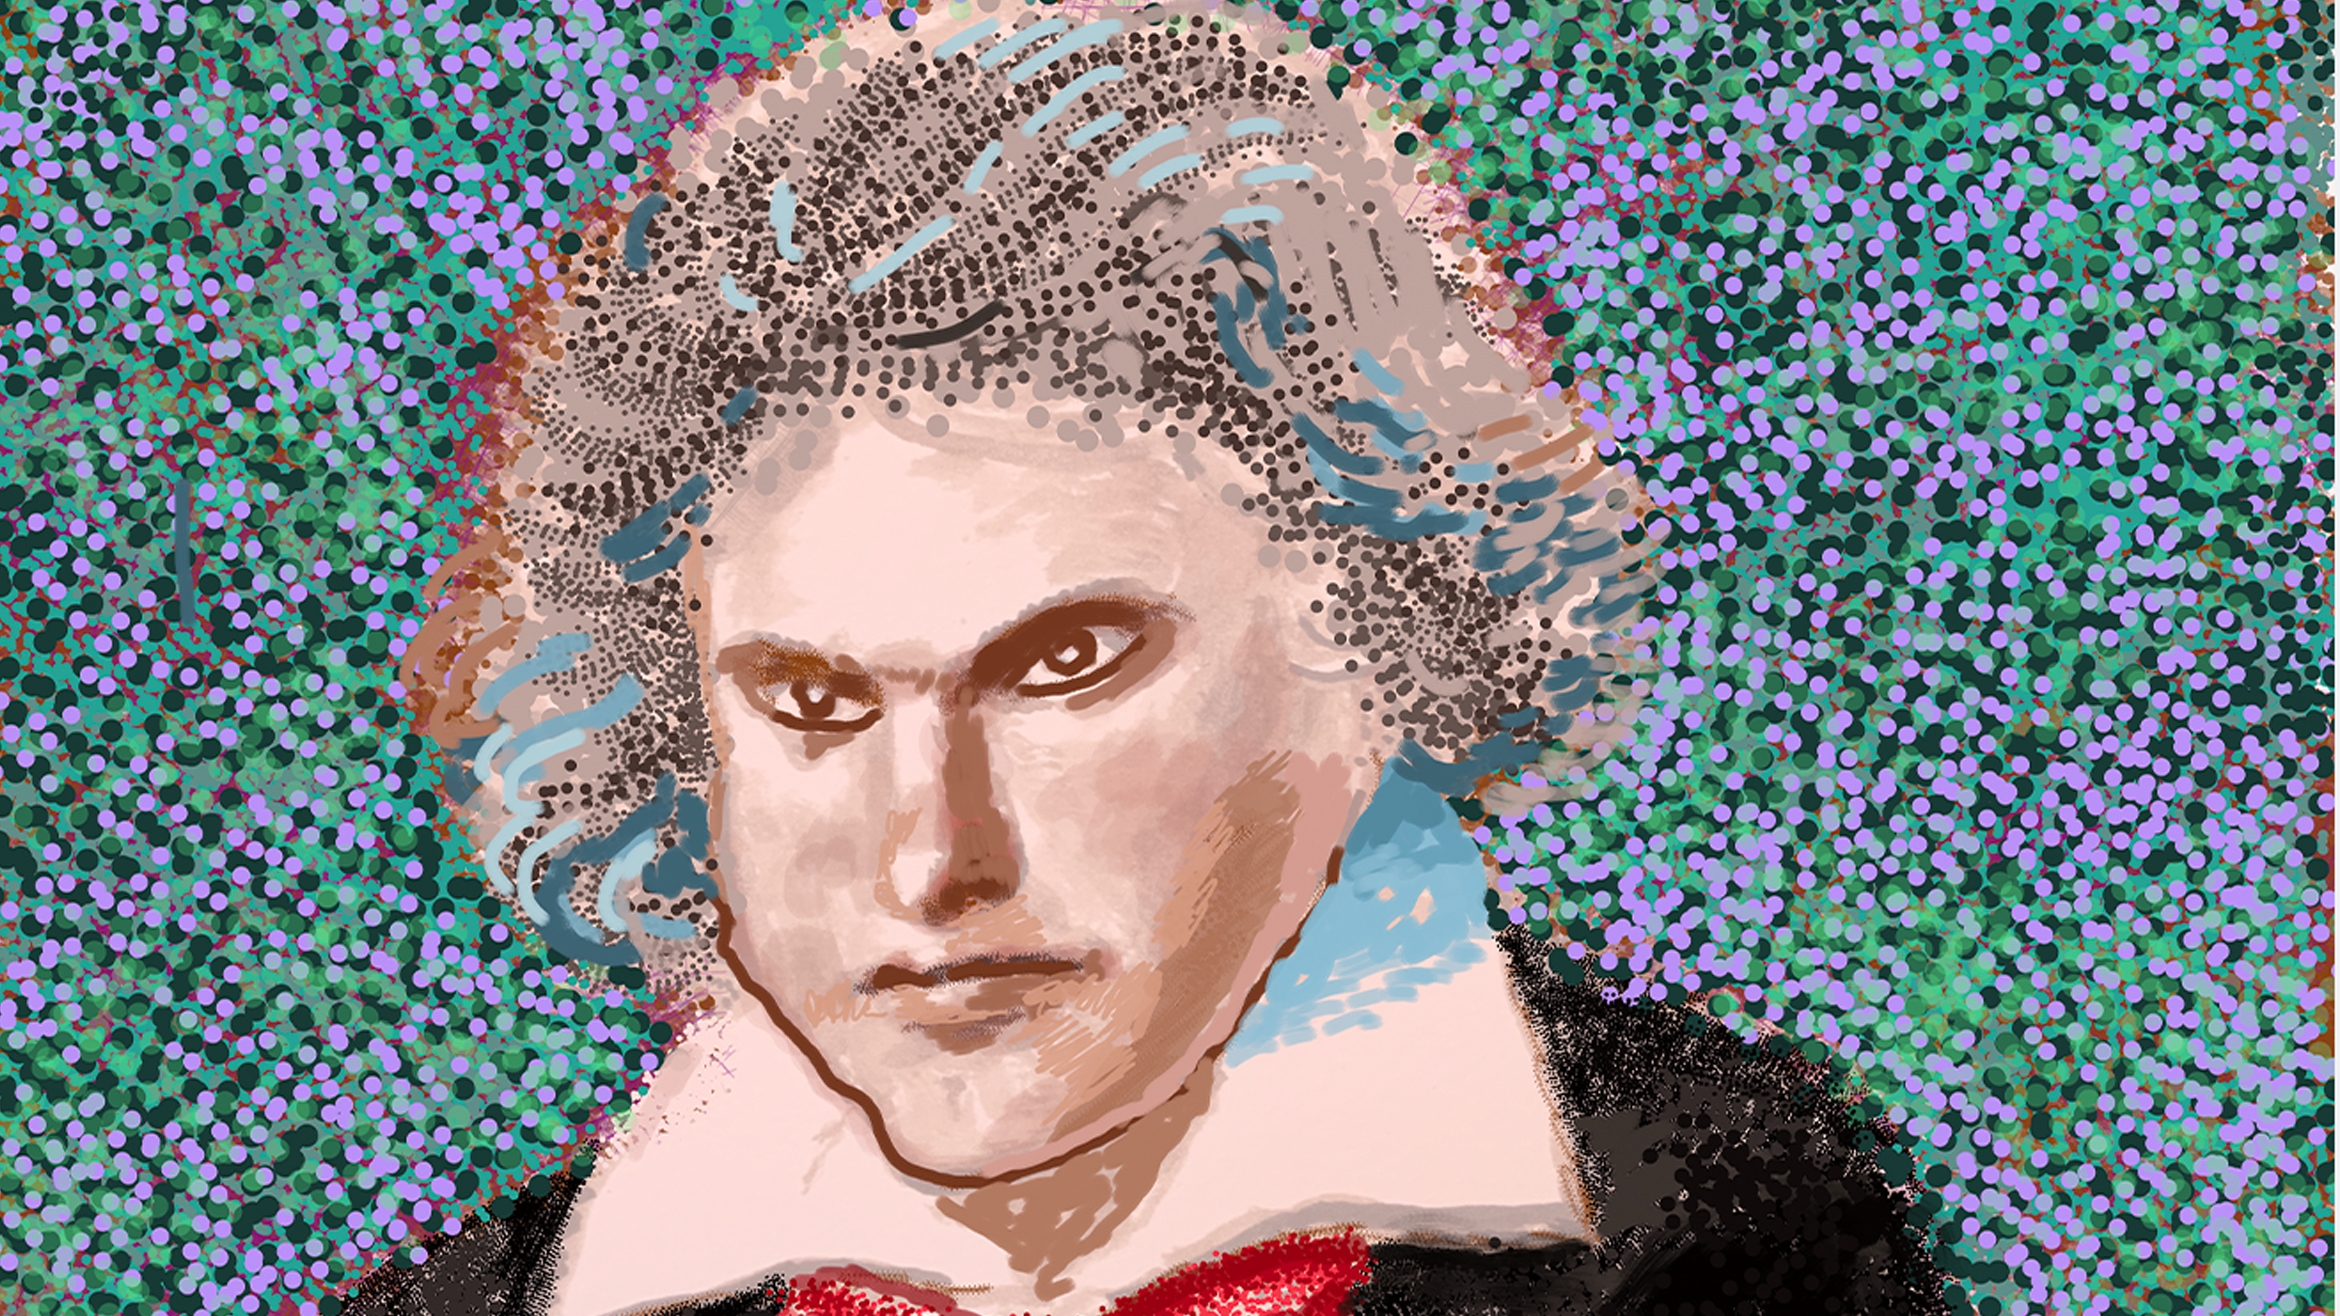 Zum 250-sten Geburtstag Beethovens kreierte David Hockney ein Poträt des Komponisten auf dem iPad –